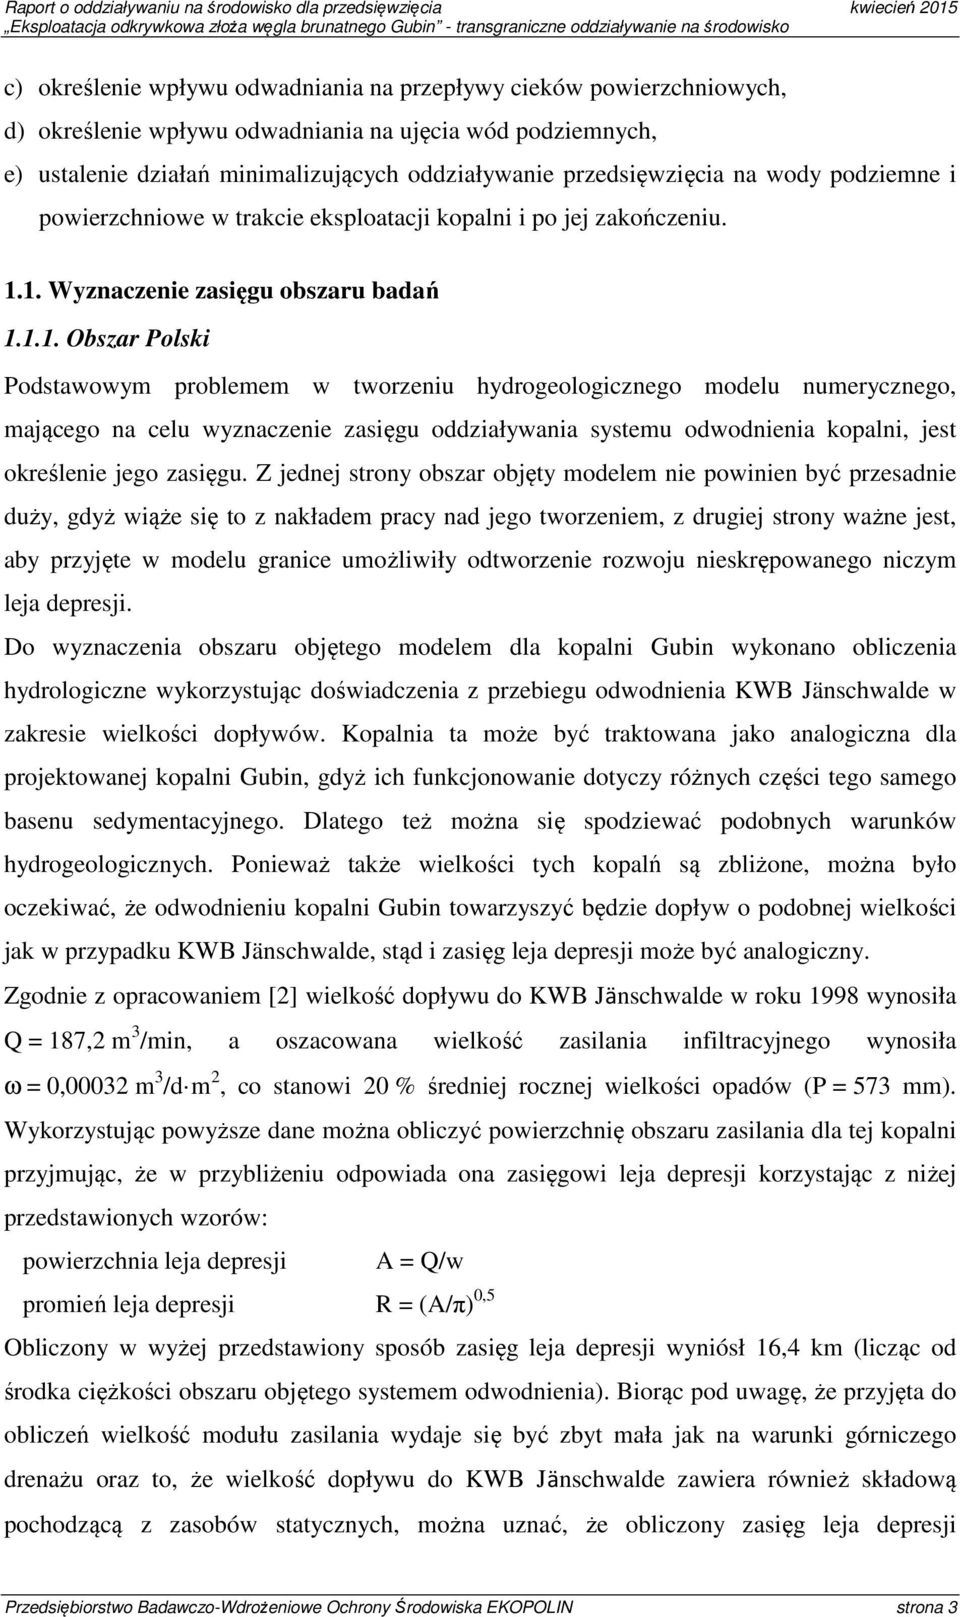 1. Wyznaczenie zasięgu obszaru badań 1.1.1. Obszar Polski Podstawowym problemem w tworzeniu hydrogeologicznego modelu numerycznego, mającego na celu wyznaczenie zasięgu oddziaływania systemu odwodnienia kopalni, jest określenie jego zasięgu.